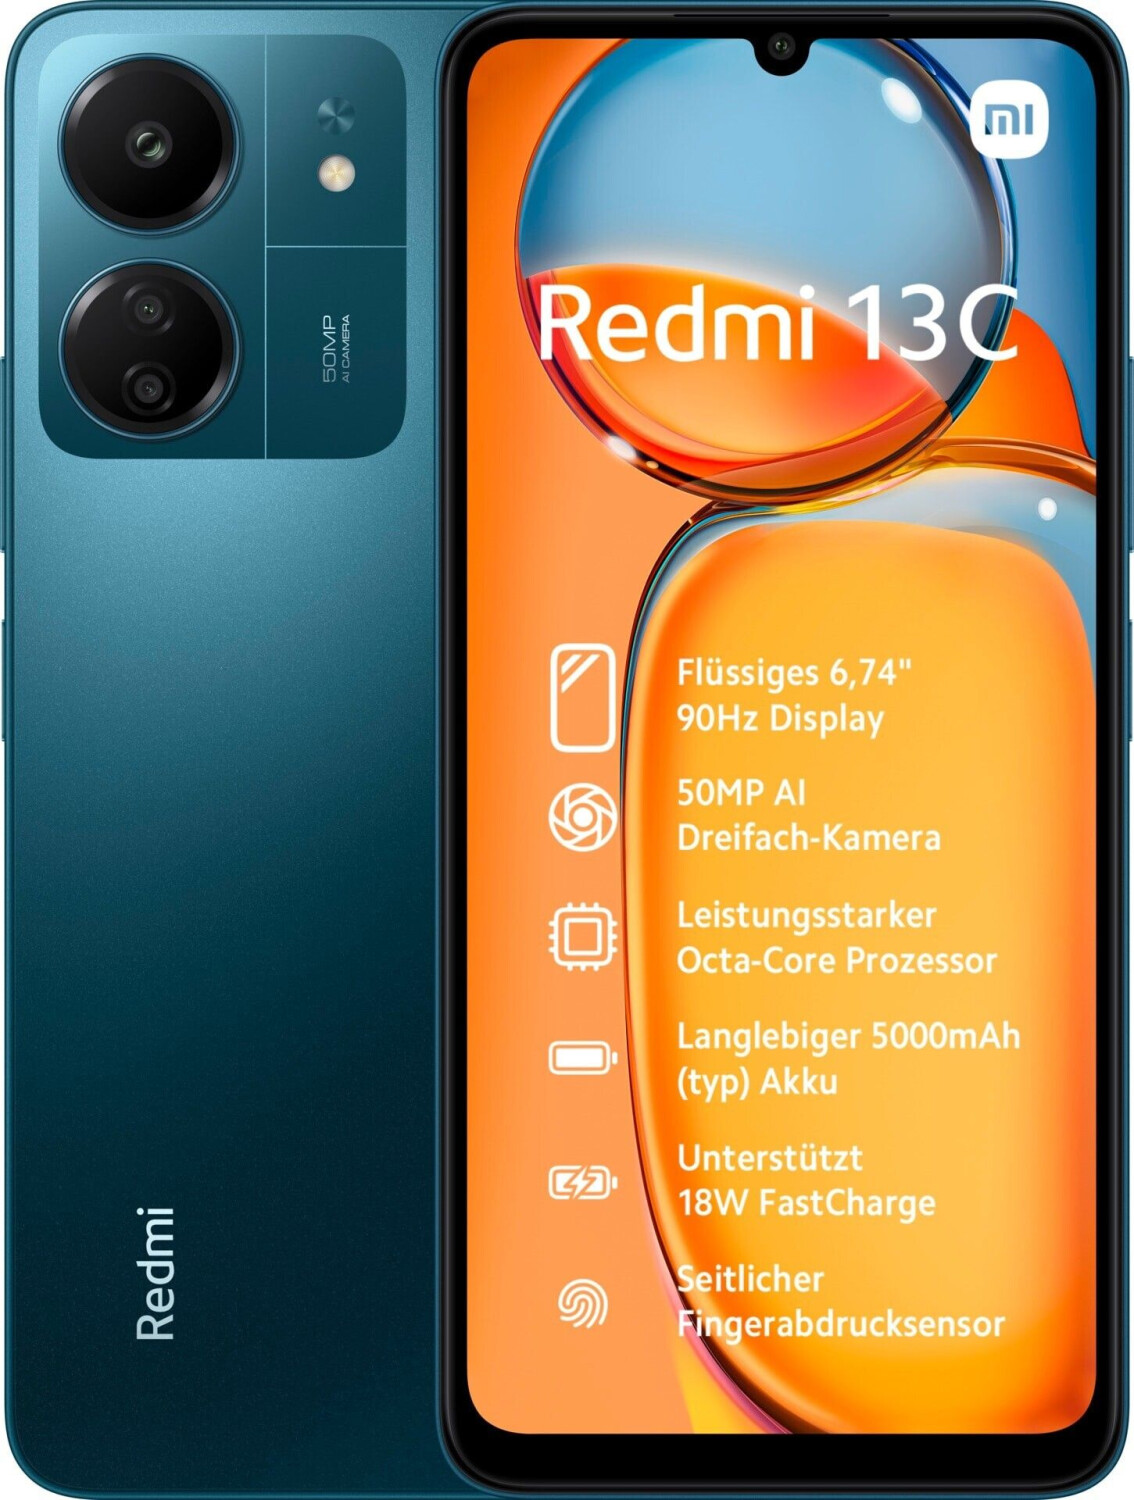 El Nuevo Redmi 13 C De Xiaomi